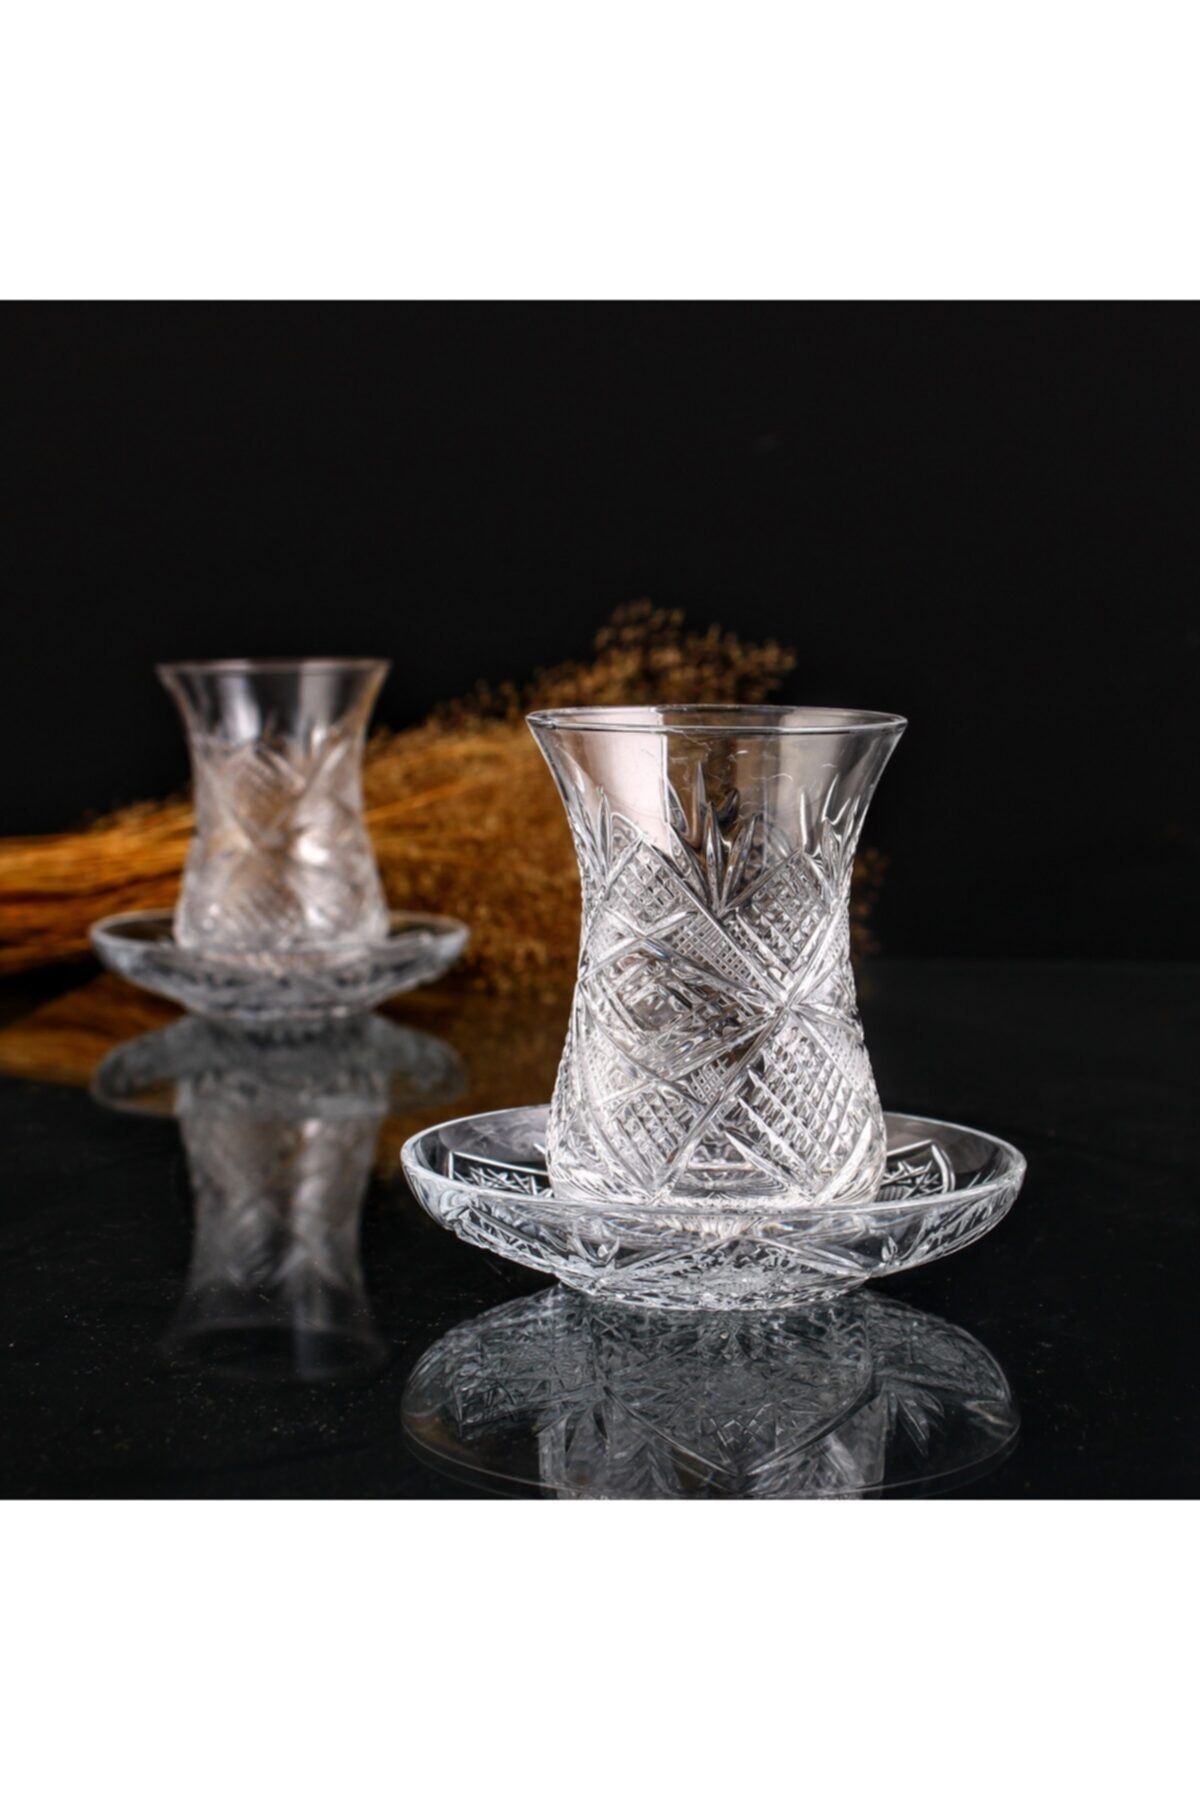 KristalGalerisi 12 Parça Ajda Boy Çay Takımı - Göz Dekor